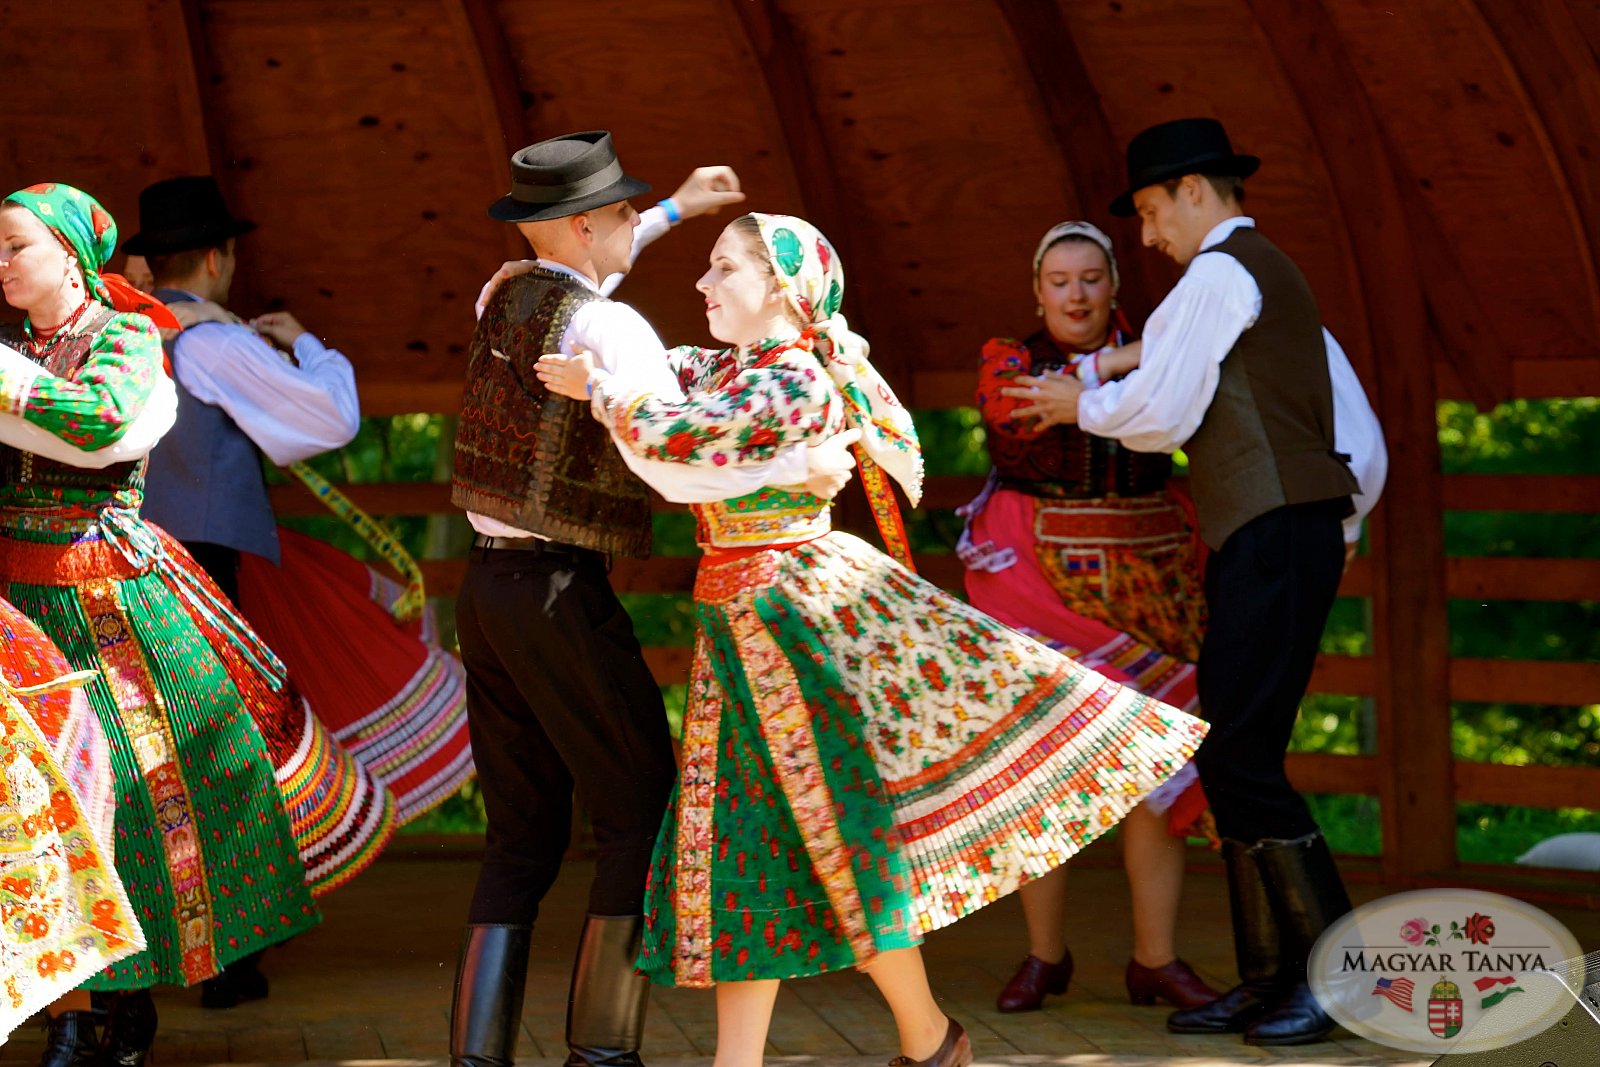                                 - Kecskemet Folk Dance Ensemble